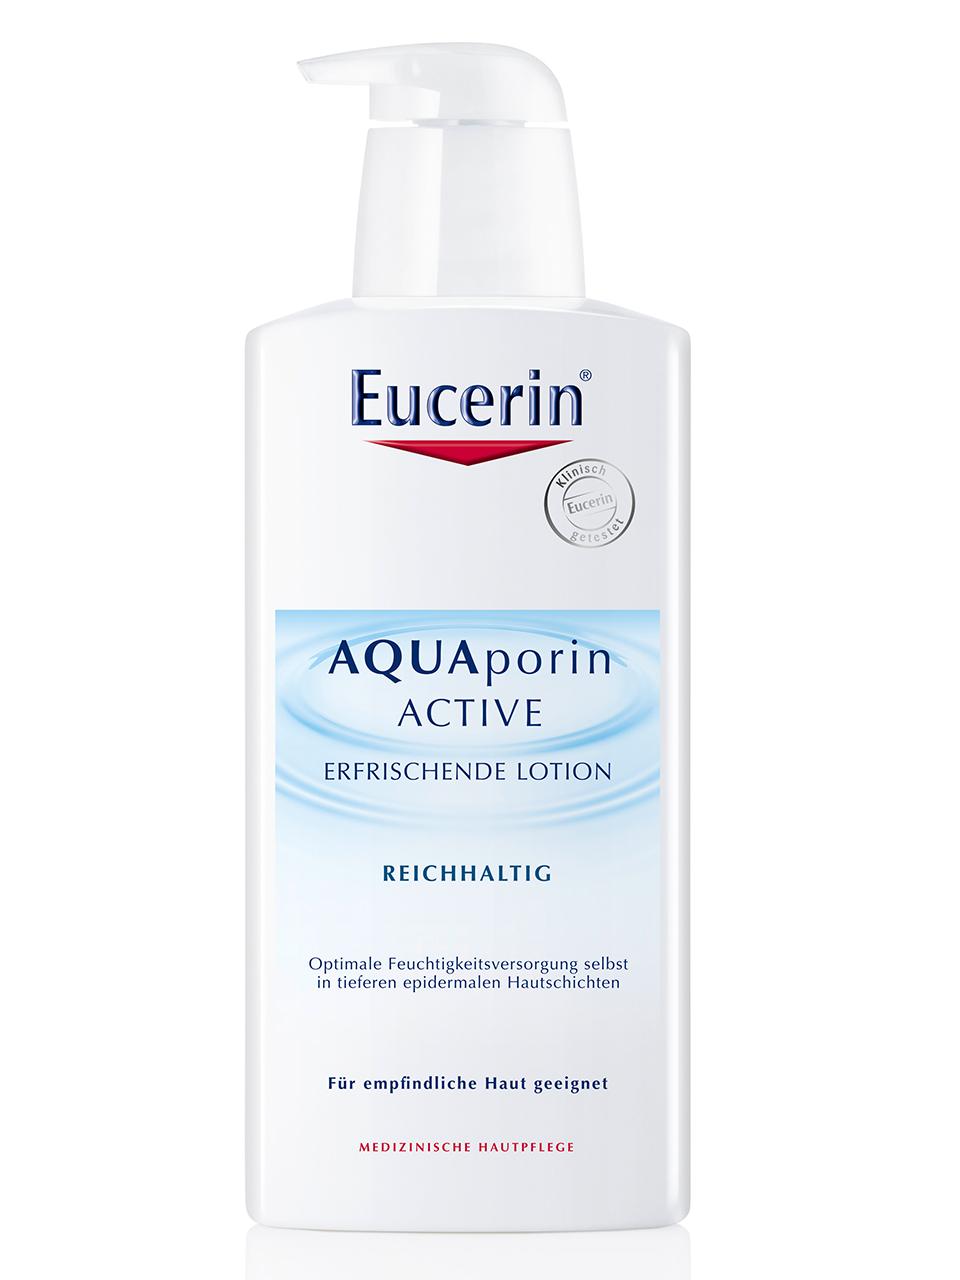 Eucerin AQUAporin ACTIVE ERFRISCHENDE LOTION REICHHALTIG